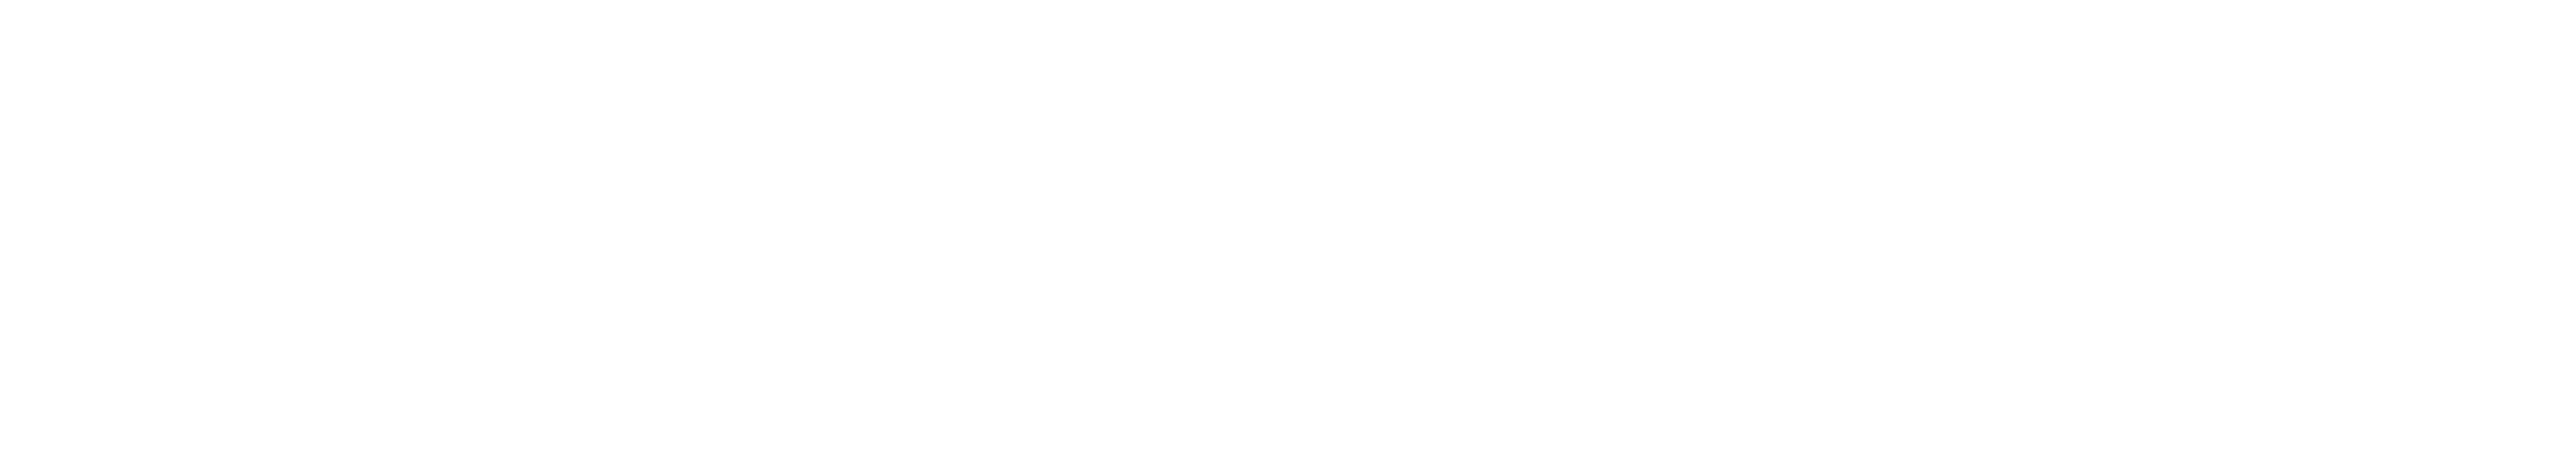 rankingCoach logo